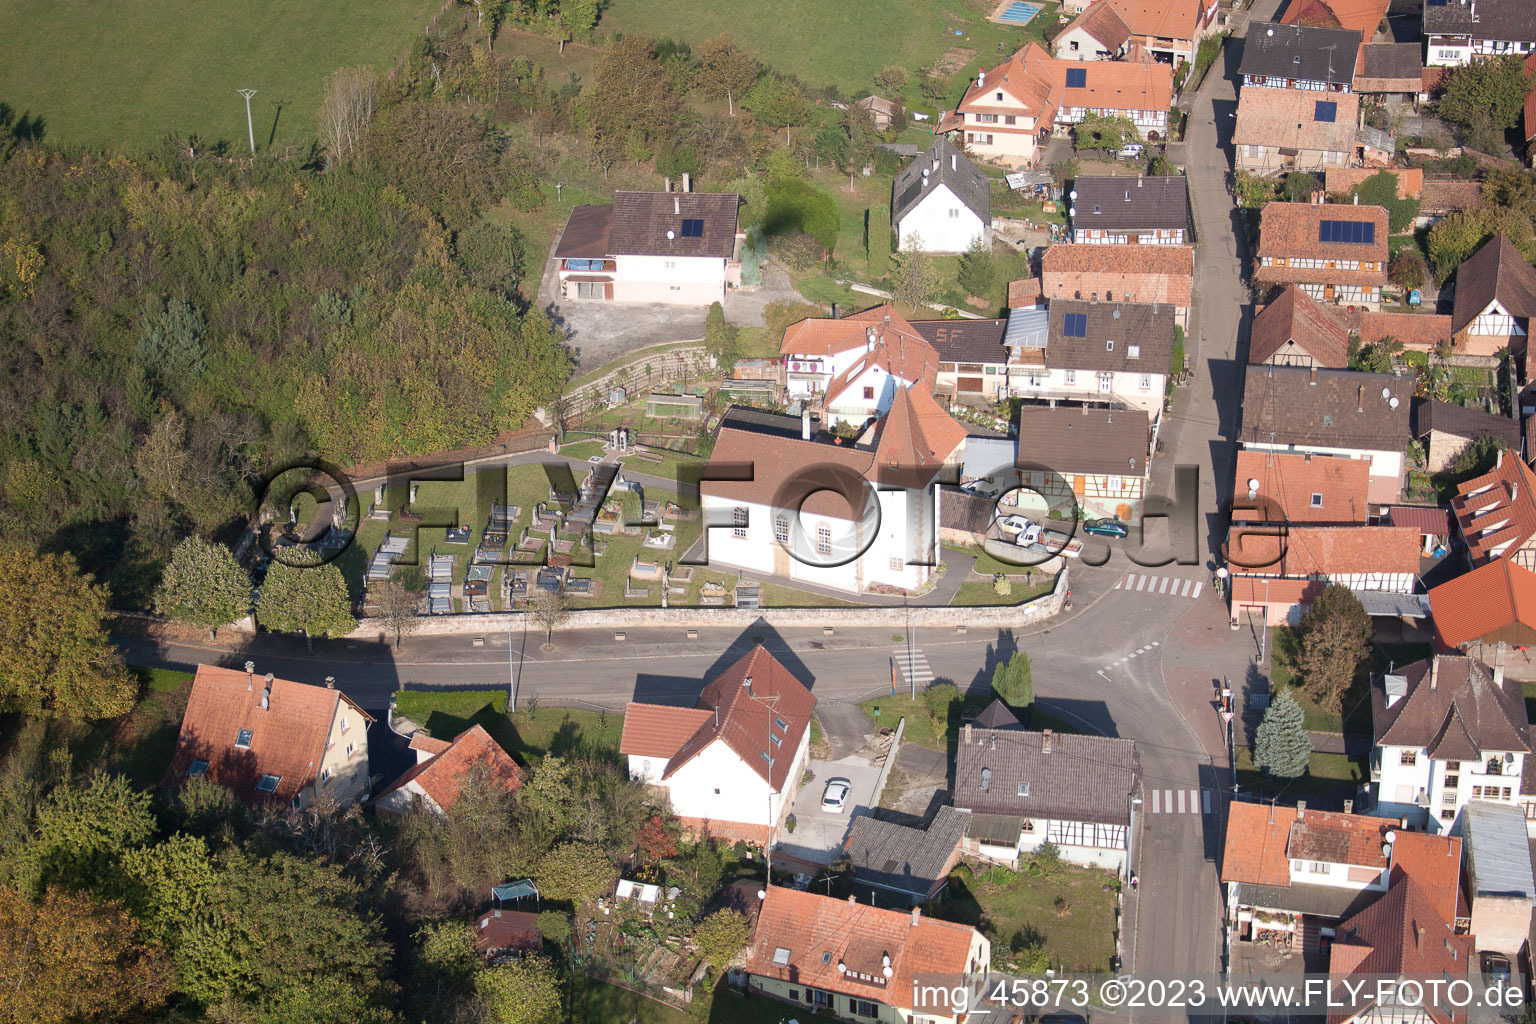 Mitschdorf im Bundesland Bas-Rhin, Frankreich aus der Drohnenperspektive